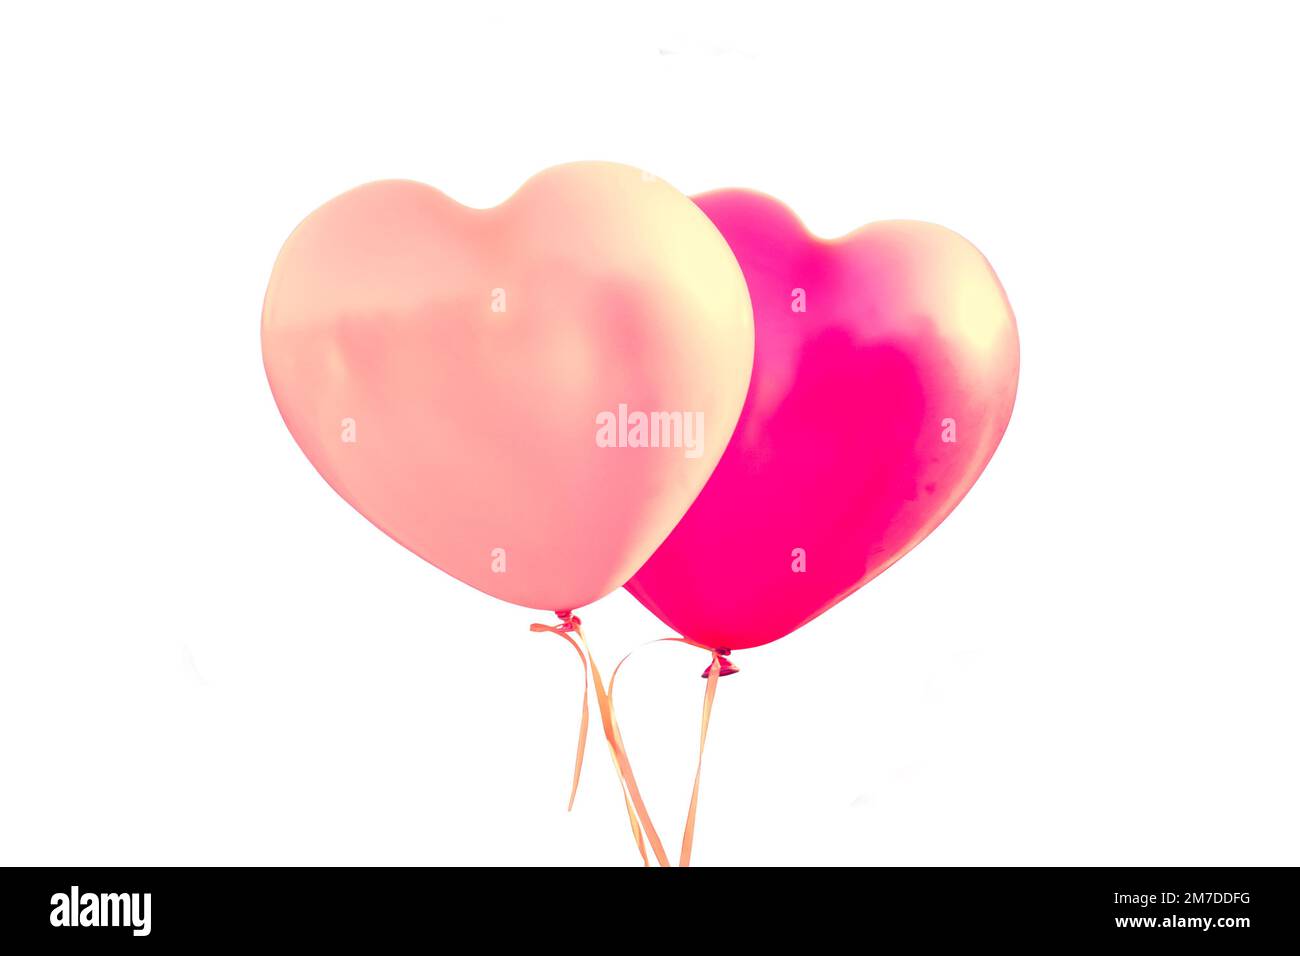 Deux ballons roses en forme de coeurs isolés sur fond blanc, le jour de la Saint-Valentin ou le mariage Banque D'Images